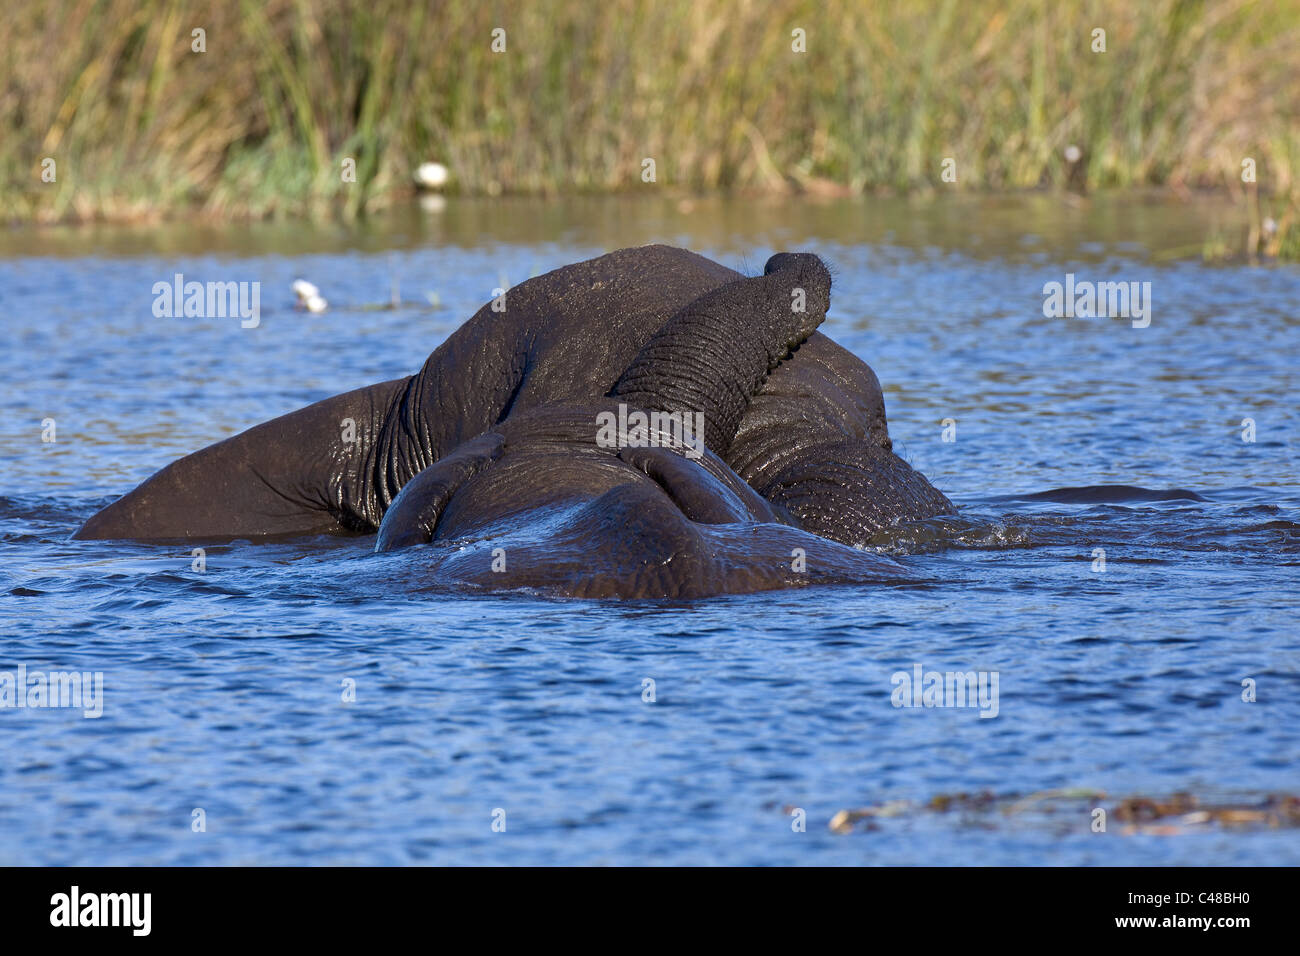 Afrikanische Elefanten (Loxodonta africana), beim Spielen im Wasser, Savuti, Botswana, Afrika Foto de stock